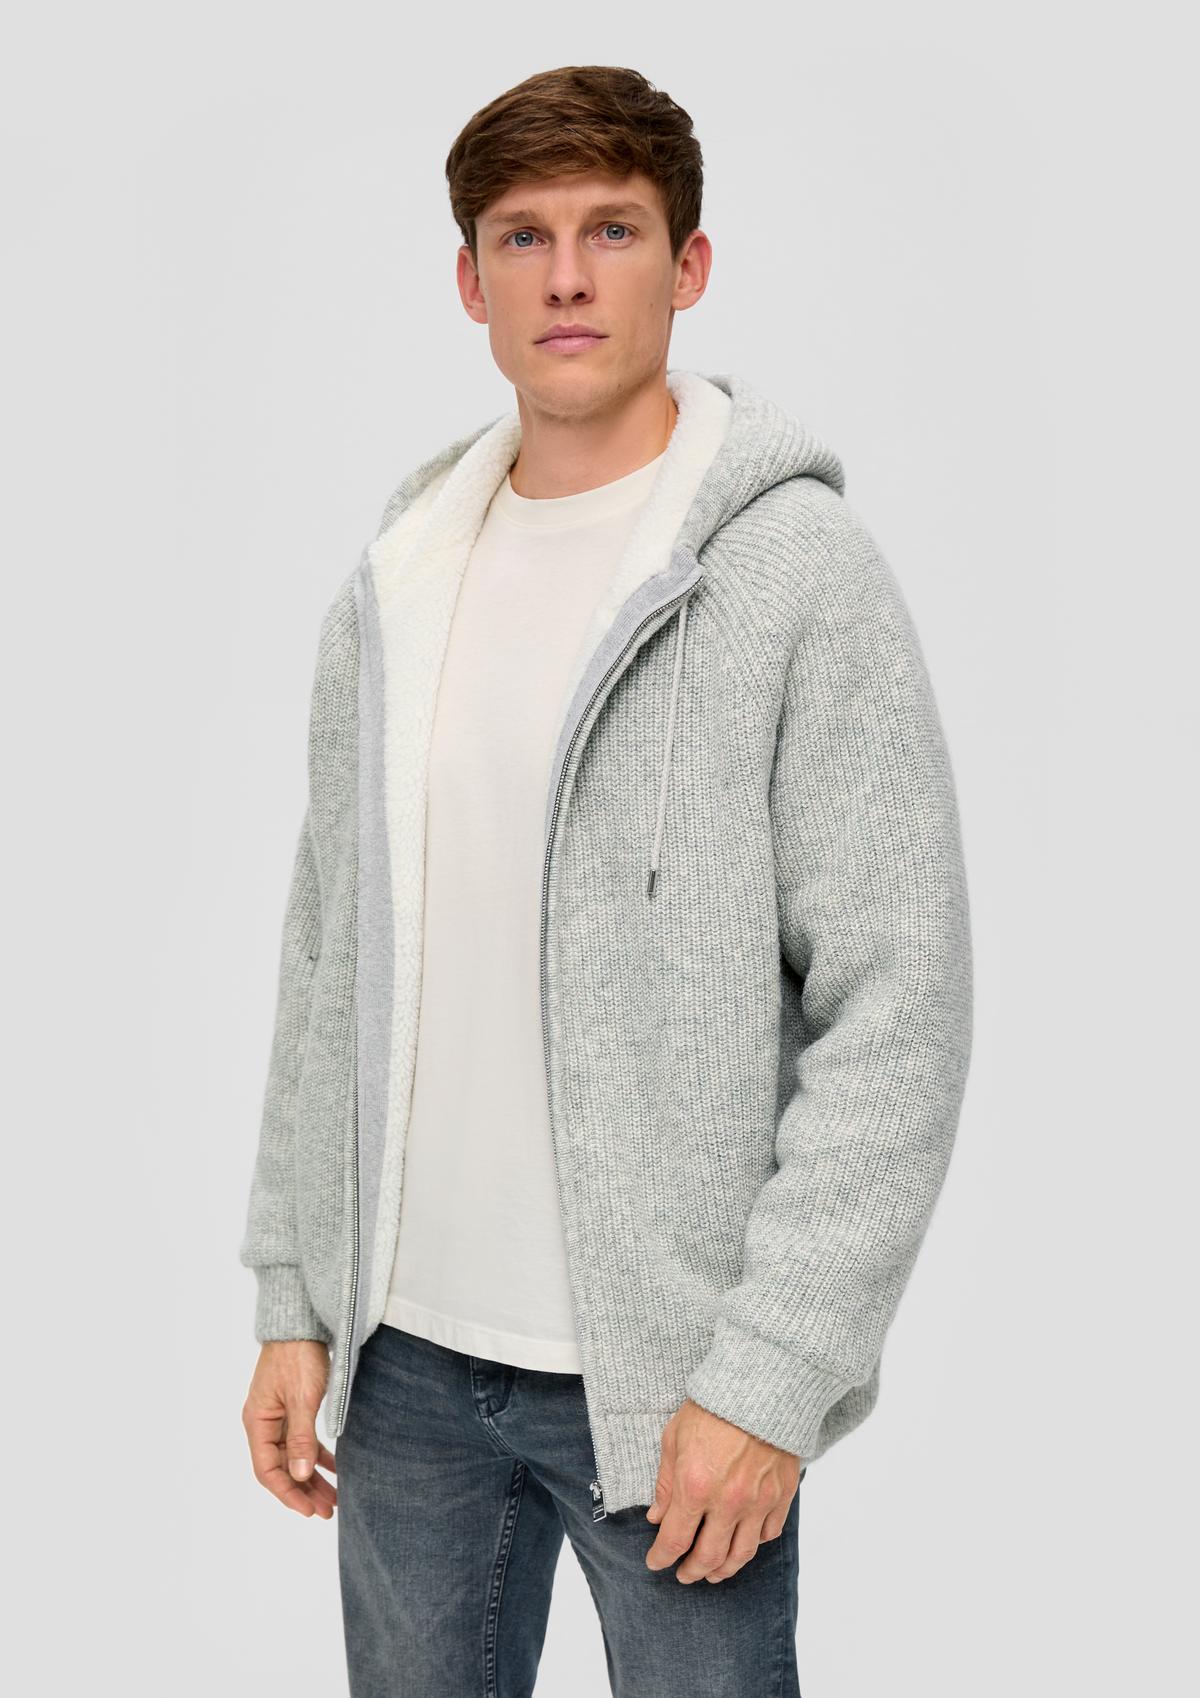 hood Fleece with a grey jacket melange -